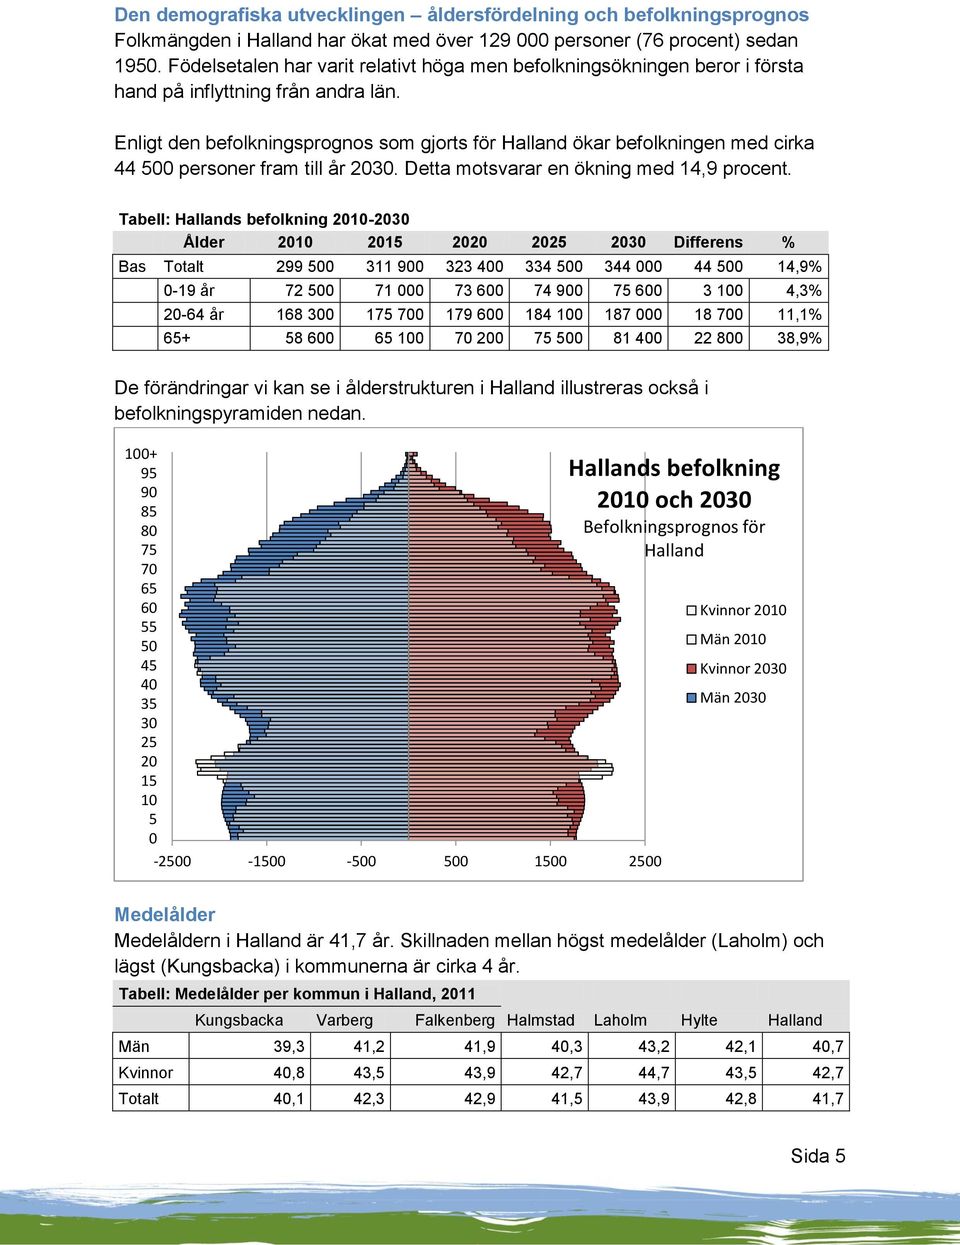 Enligt den befolkningsprognos som gjorts för Halland ökar befolkningen med cirka 44 500 personer fram till år 2030. Detta motsvarar en ökning med 14,9 procent.